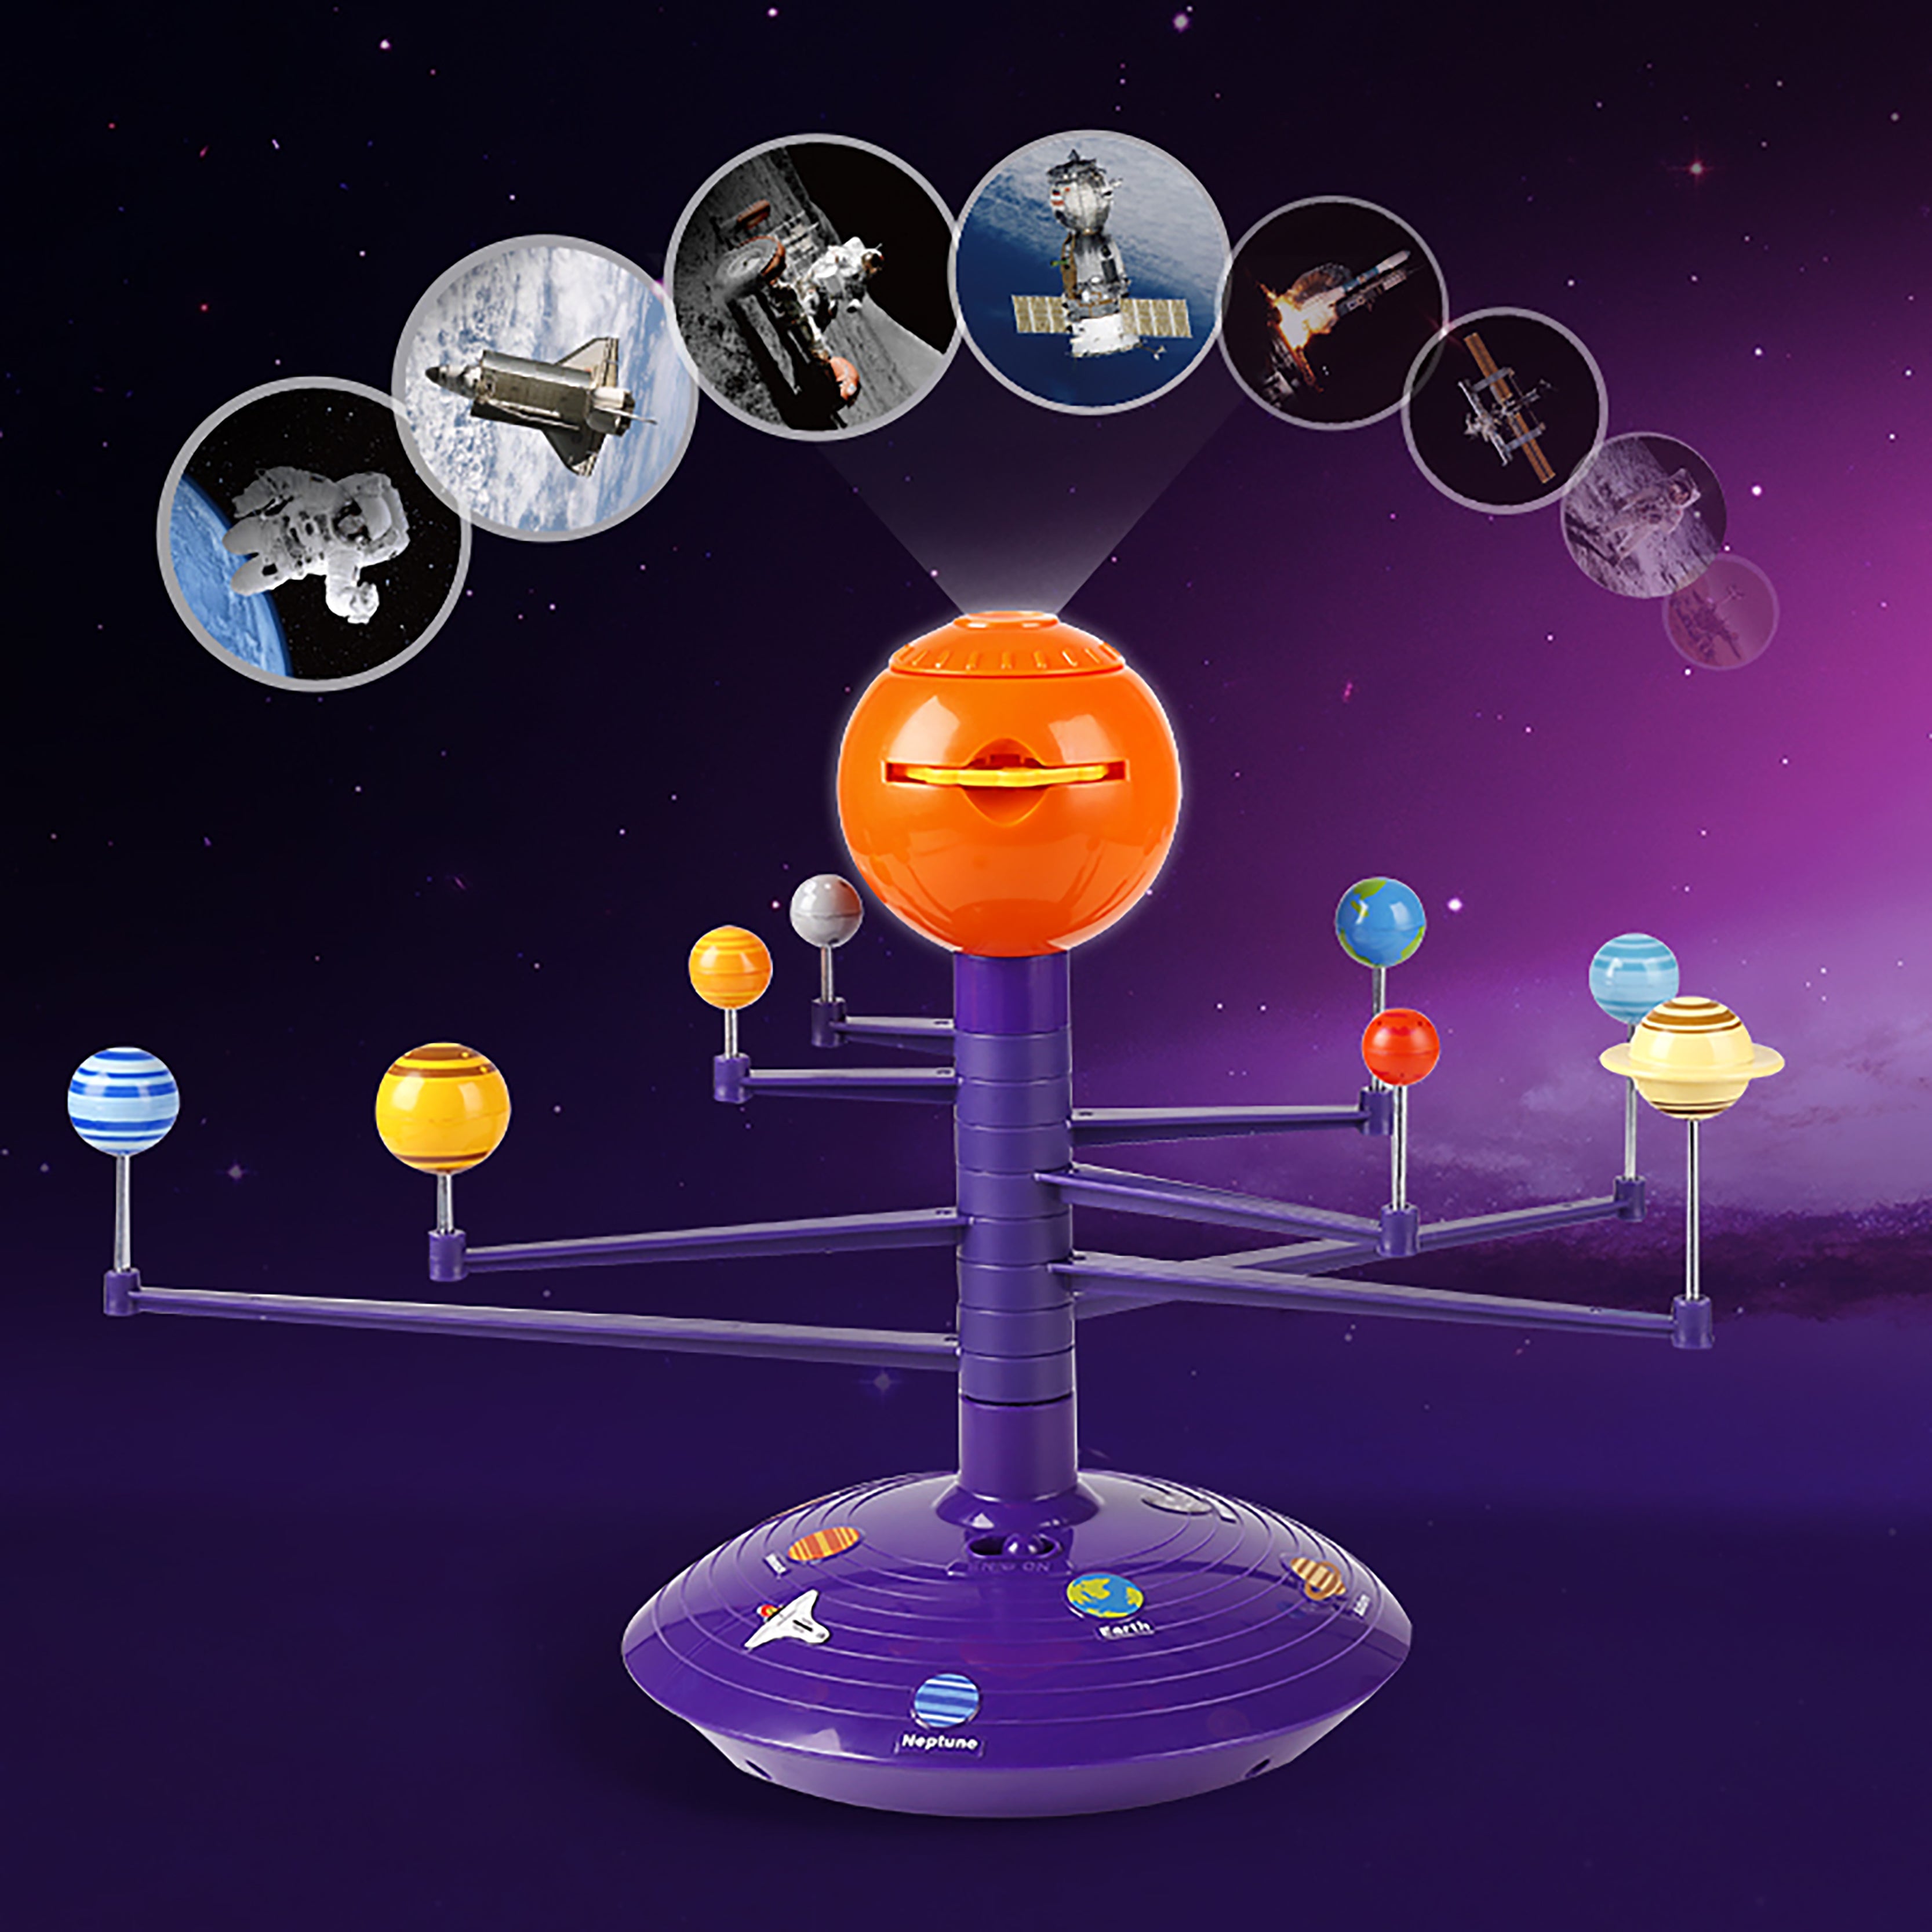 Im realistischen Planetarium umkreisen acht bewegliche Planeten die Sonne. Es besticht durch Sprachausgabe und liefert spannende Fakten rund um die Planeten.